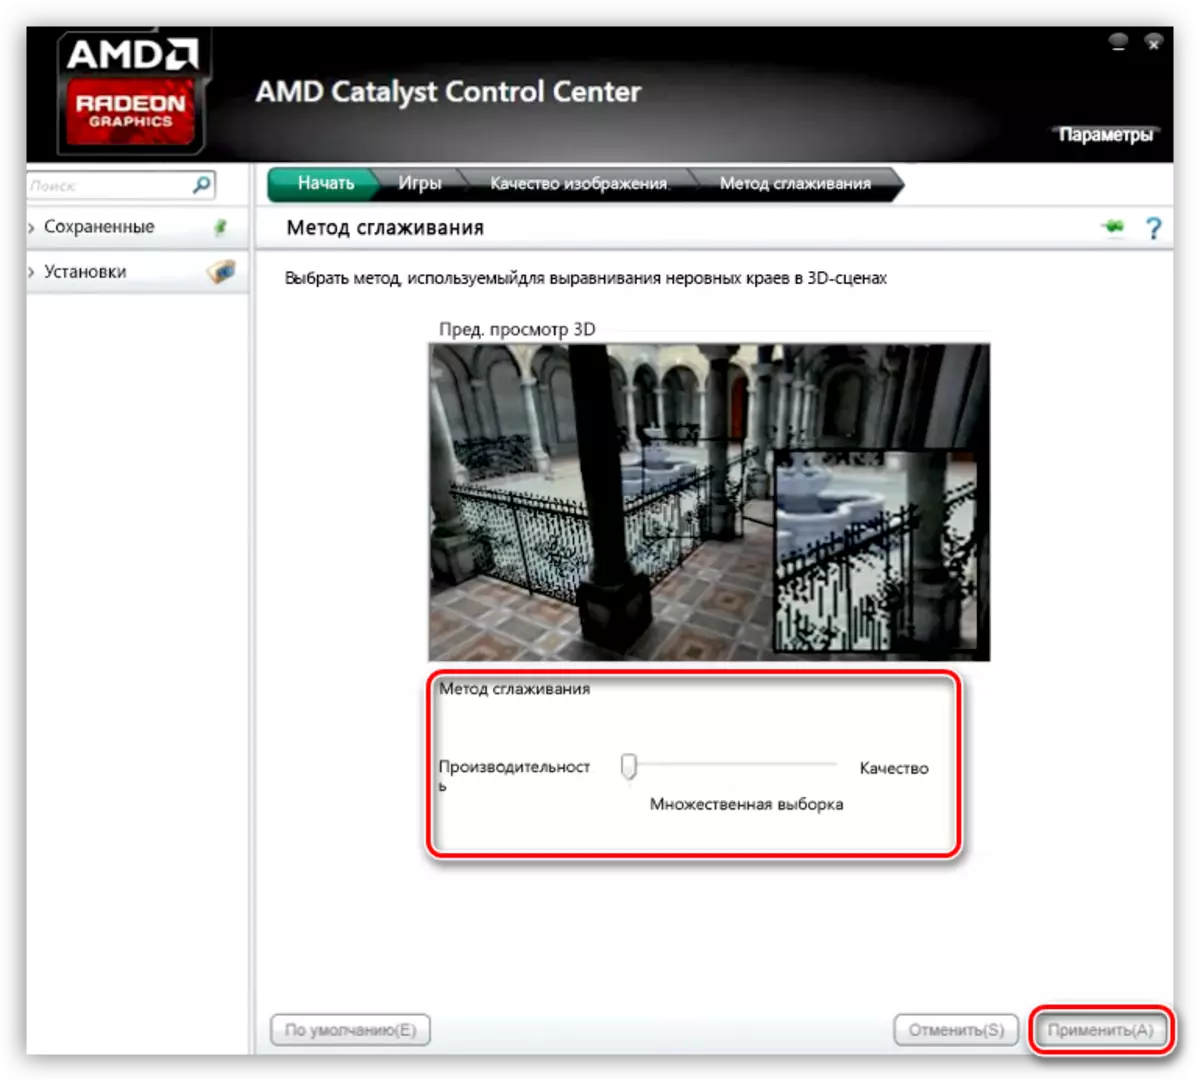 AMD வீடியோ கார்டு அமைப்புகளில் மென்மையான முறையை அமைத்தல்